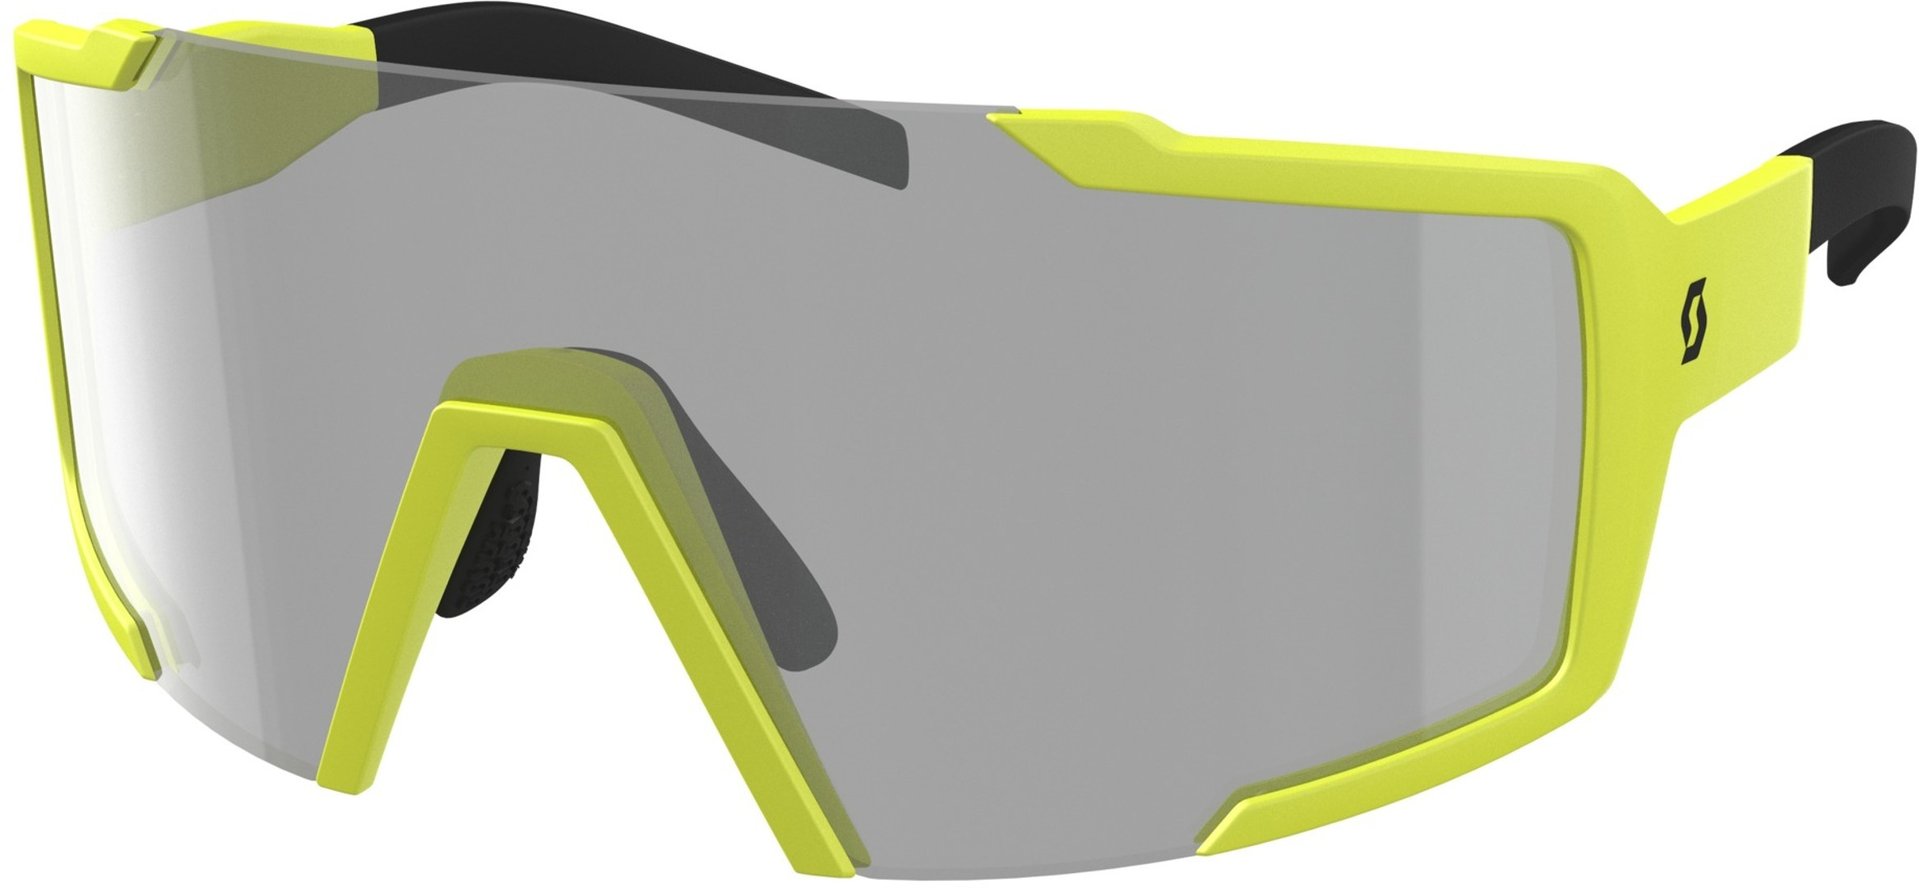 Солнцезащитные очки Scott Shield LS с регулируемой носовой накладкой, желтый/серый солнцезащитные очки черный серый